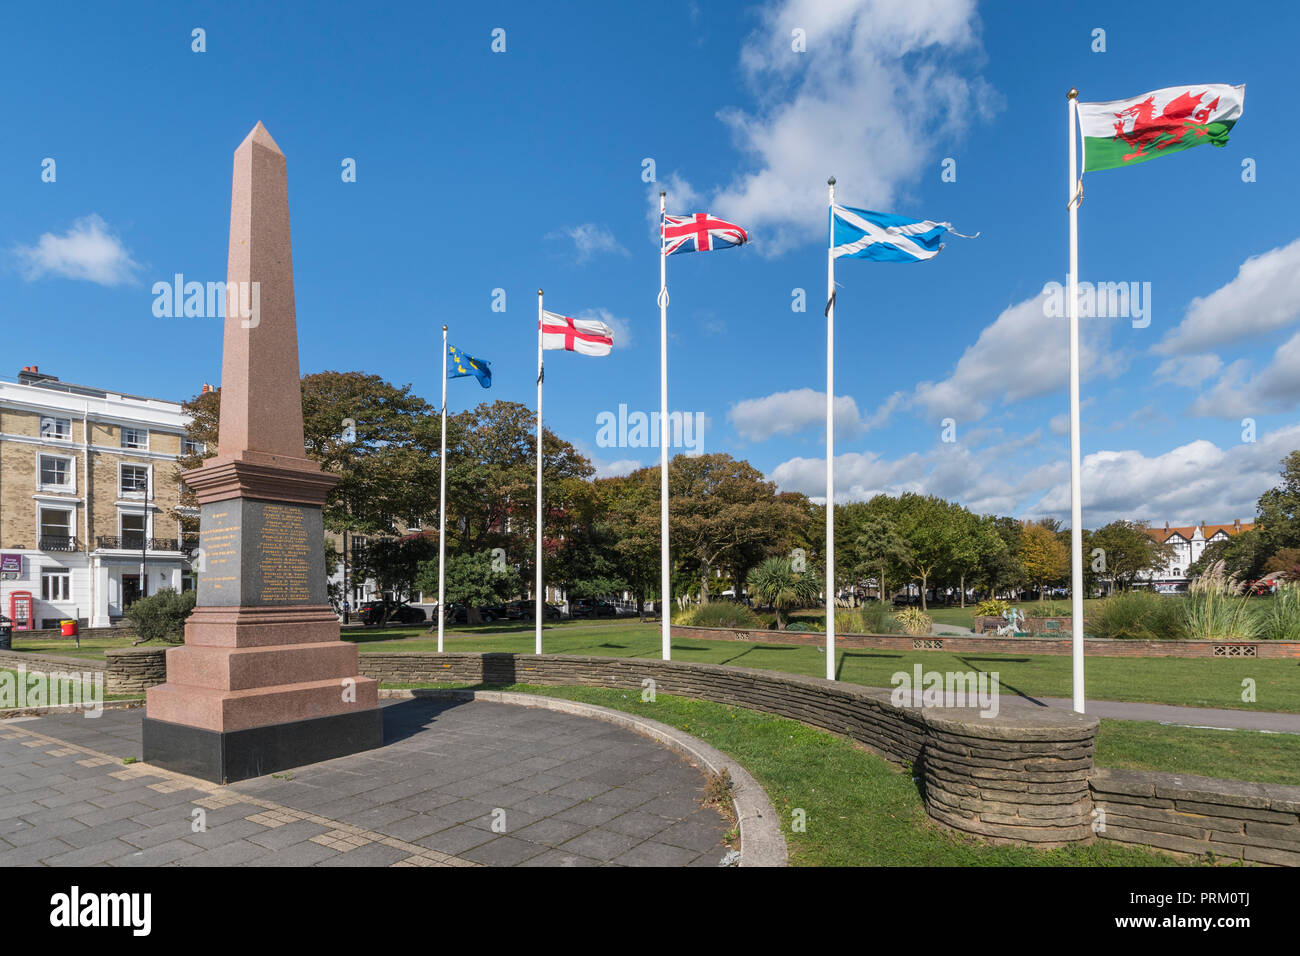 Kriegerdenkmal für die Toten des Südafrikanischen Krieges (1899-1902) in Pulborough Gärten in Worthing, West Sussex, England, UK. Krieg Denkmal. Stockfoto